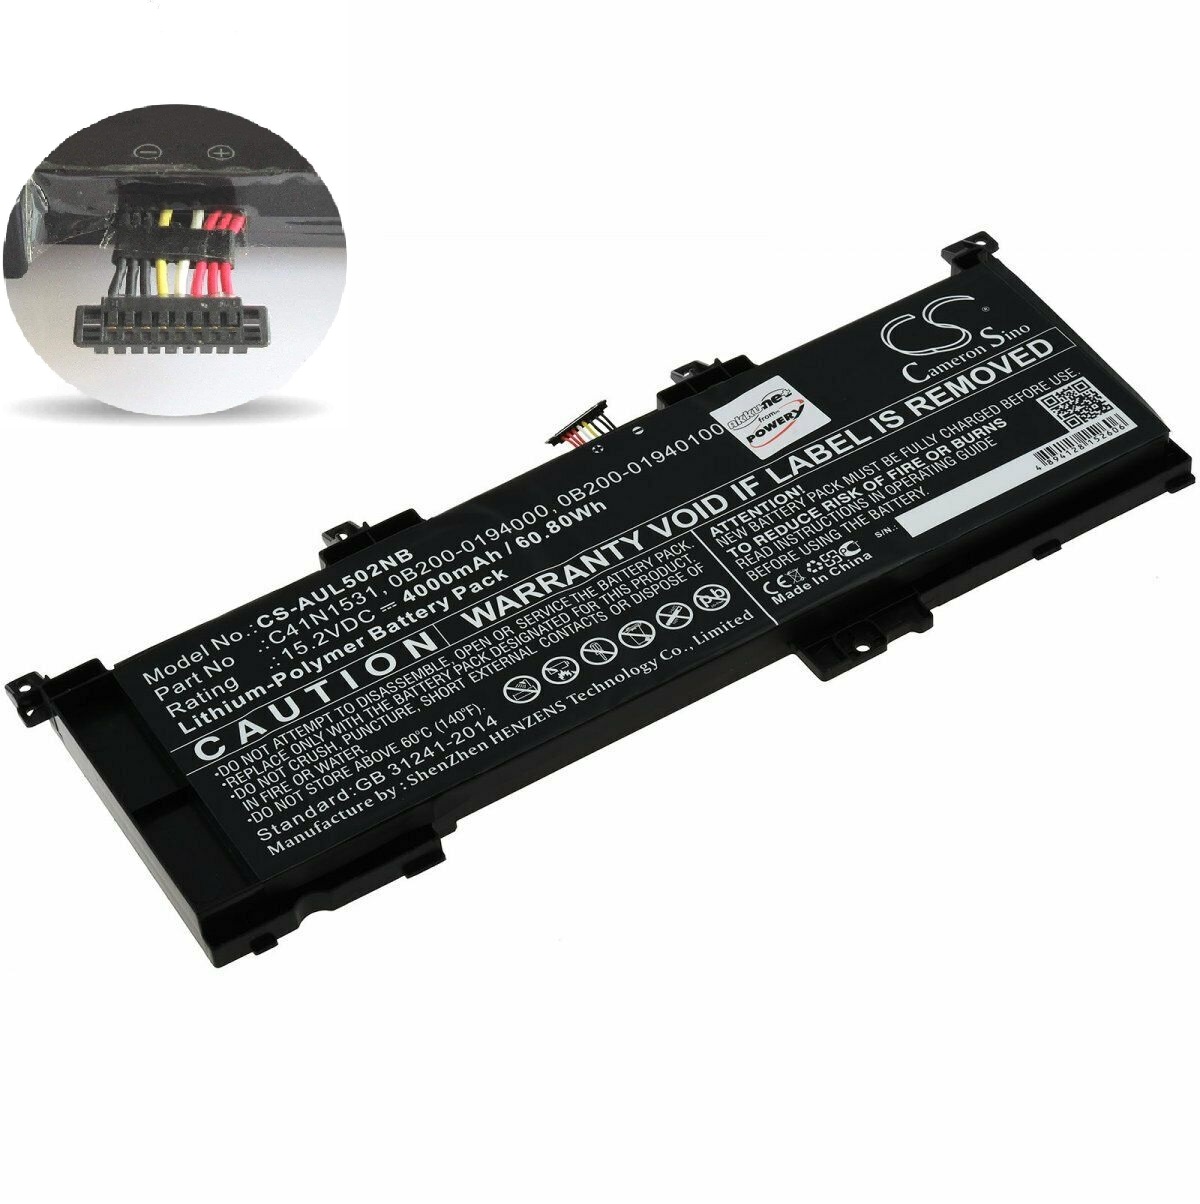 Batterie pour Asus GL502VY-DS71 GL502VY-DS74 Rog GL502VS GL502VT Rog Strix GL502VS C41N1531 0B200-01940100 (compatible)